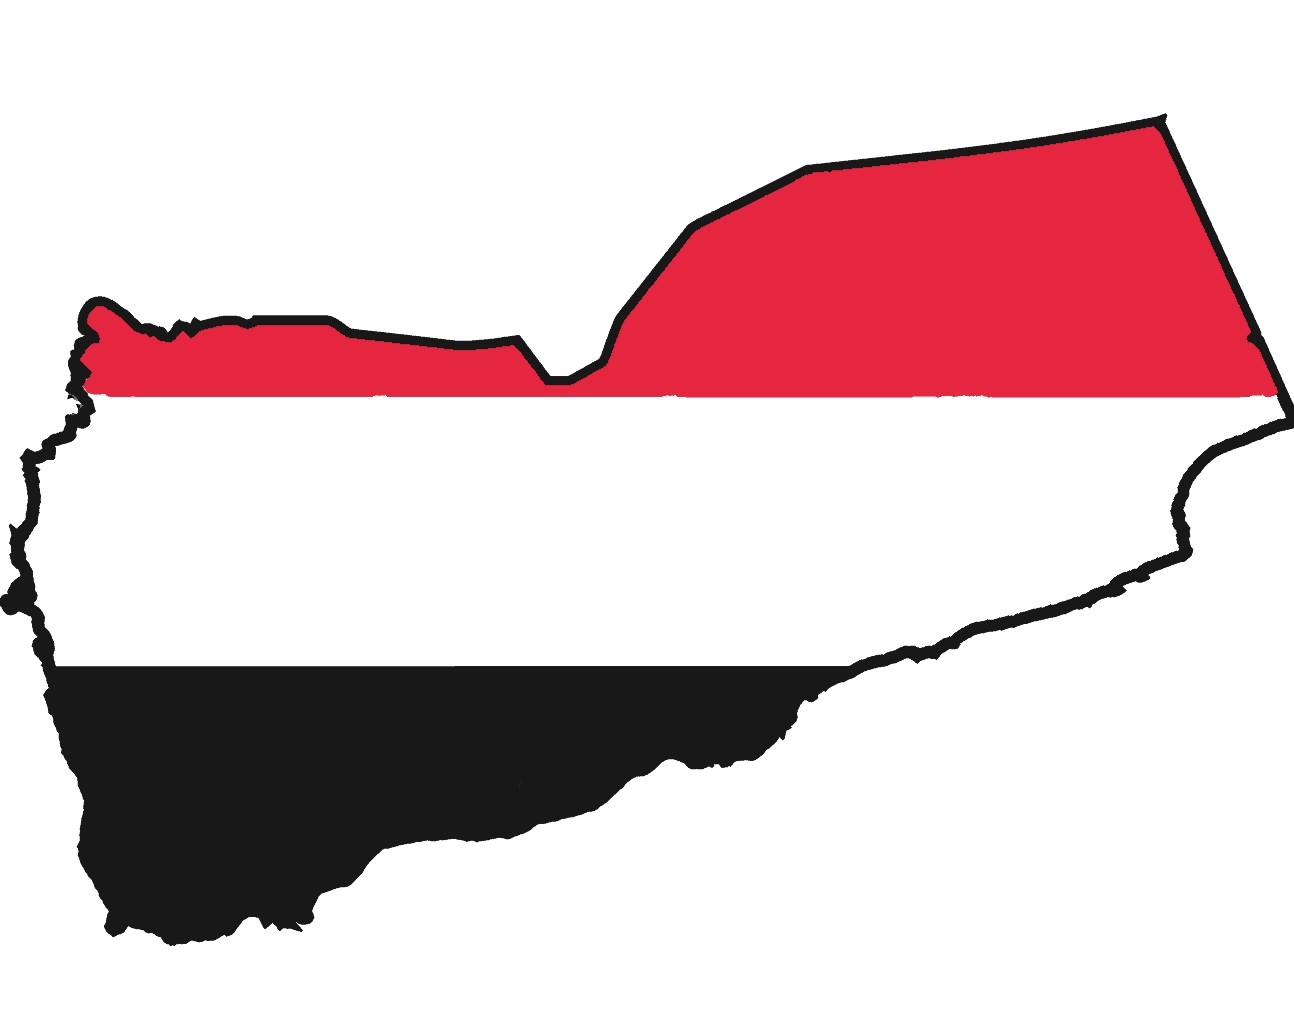 Yemen 2